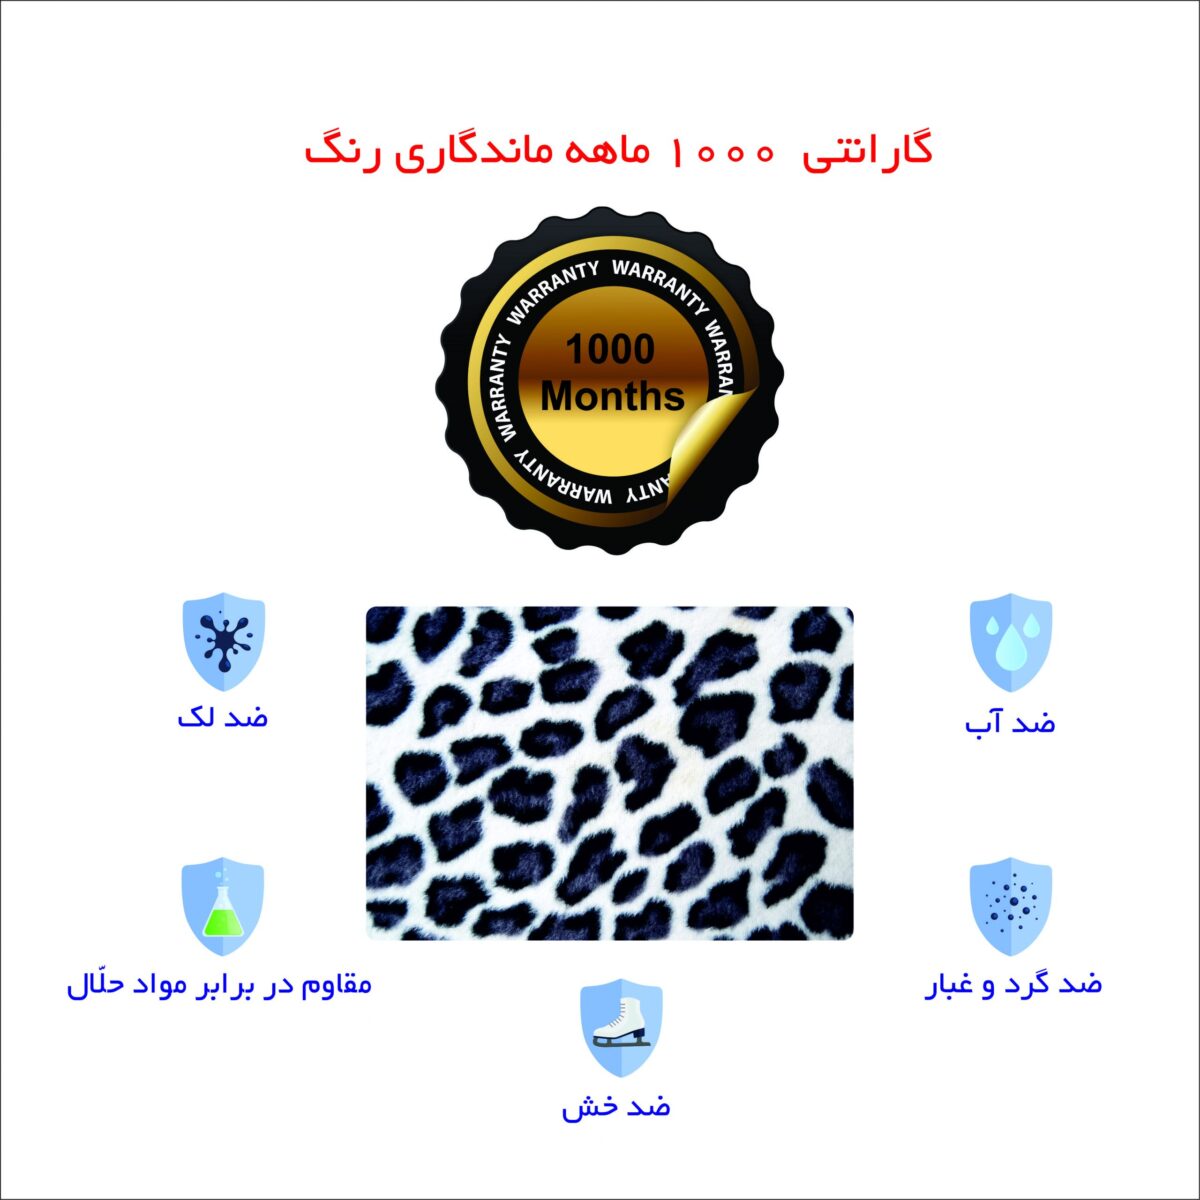 Leopard-design-laptop-skin-bl02-with-sticker-tmjeenir-min-scaled.jpg